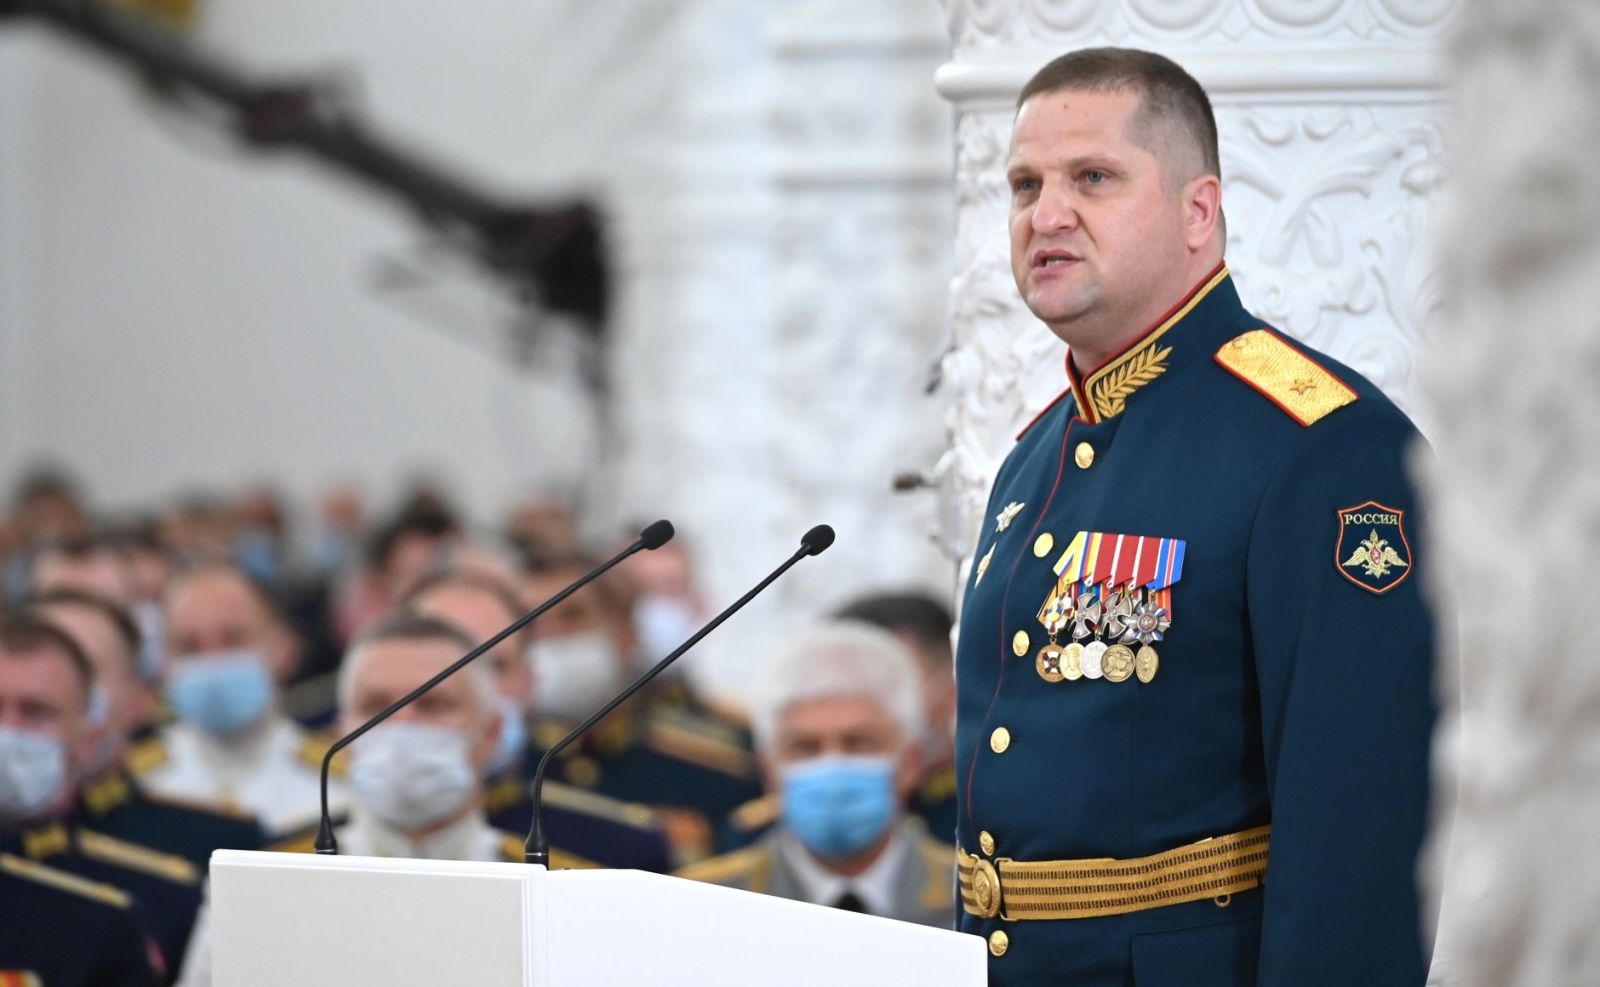 Генерал Цоков Олег Юрьевич: биография и достижения